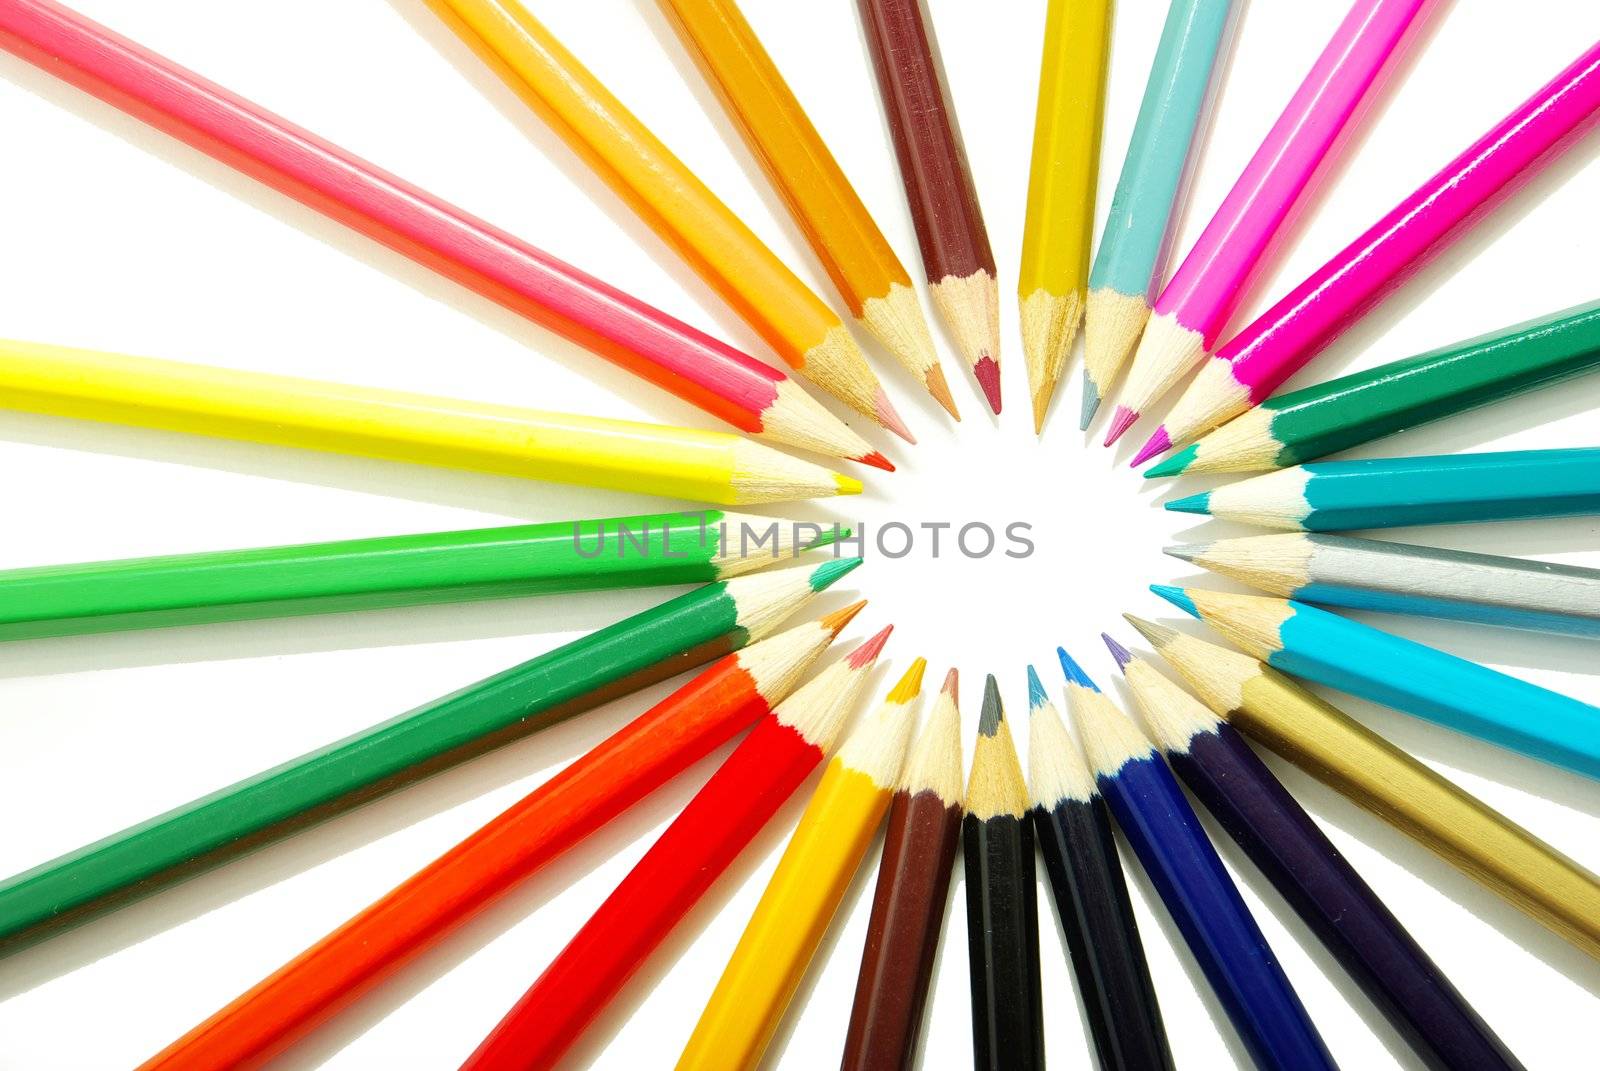  pencils by Pakhnyushchyy